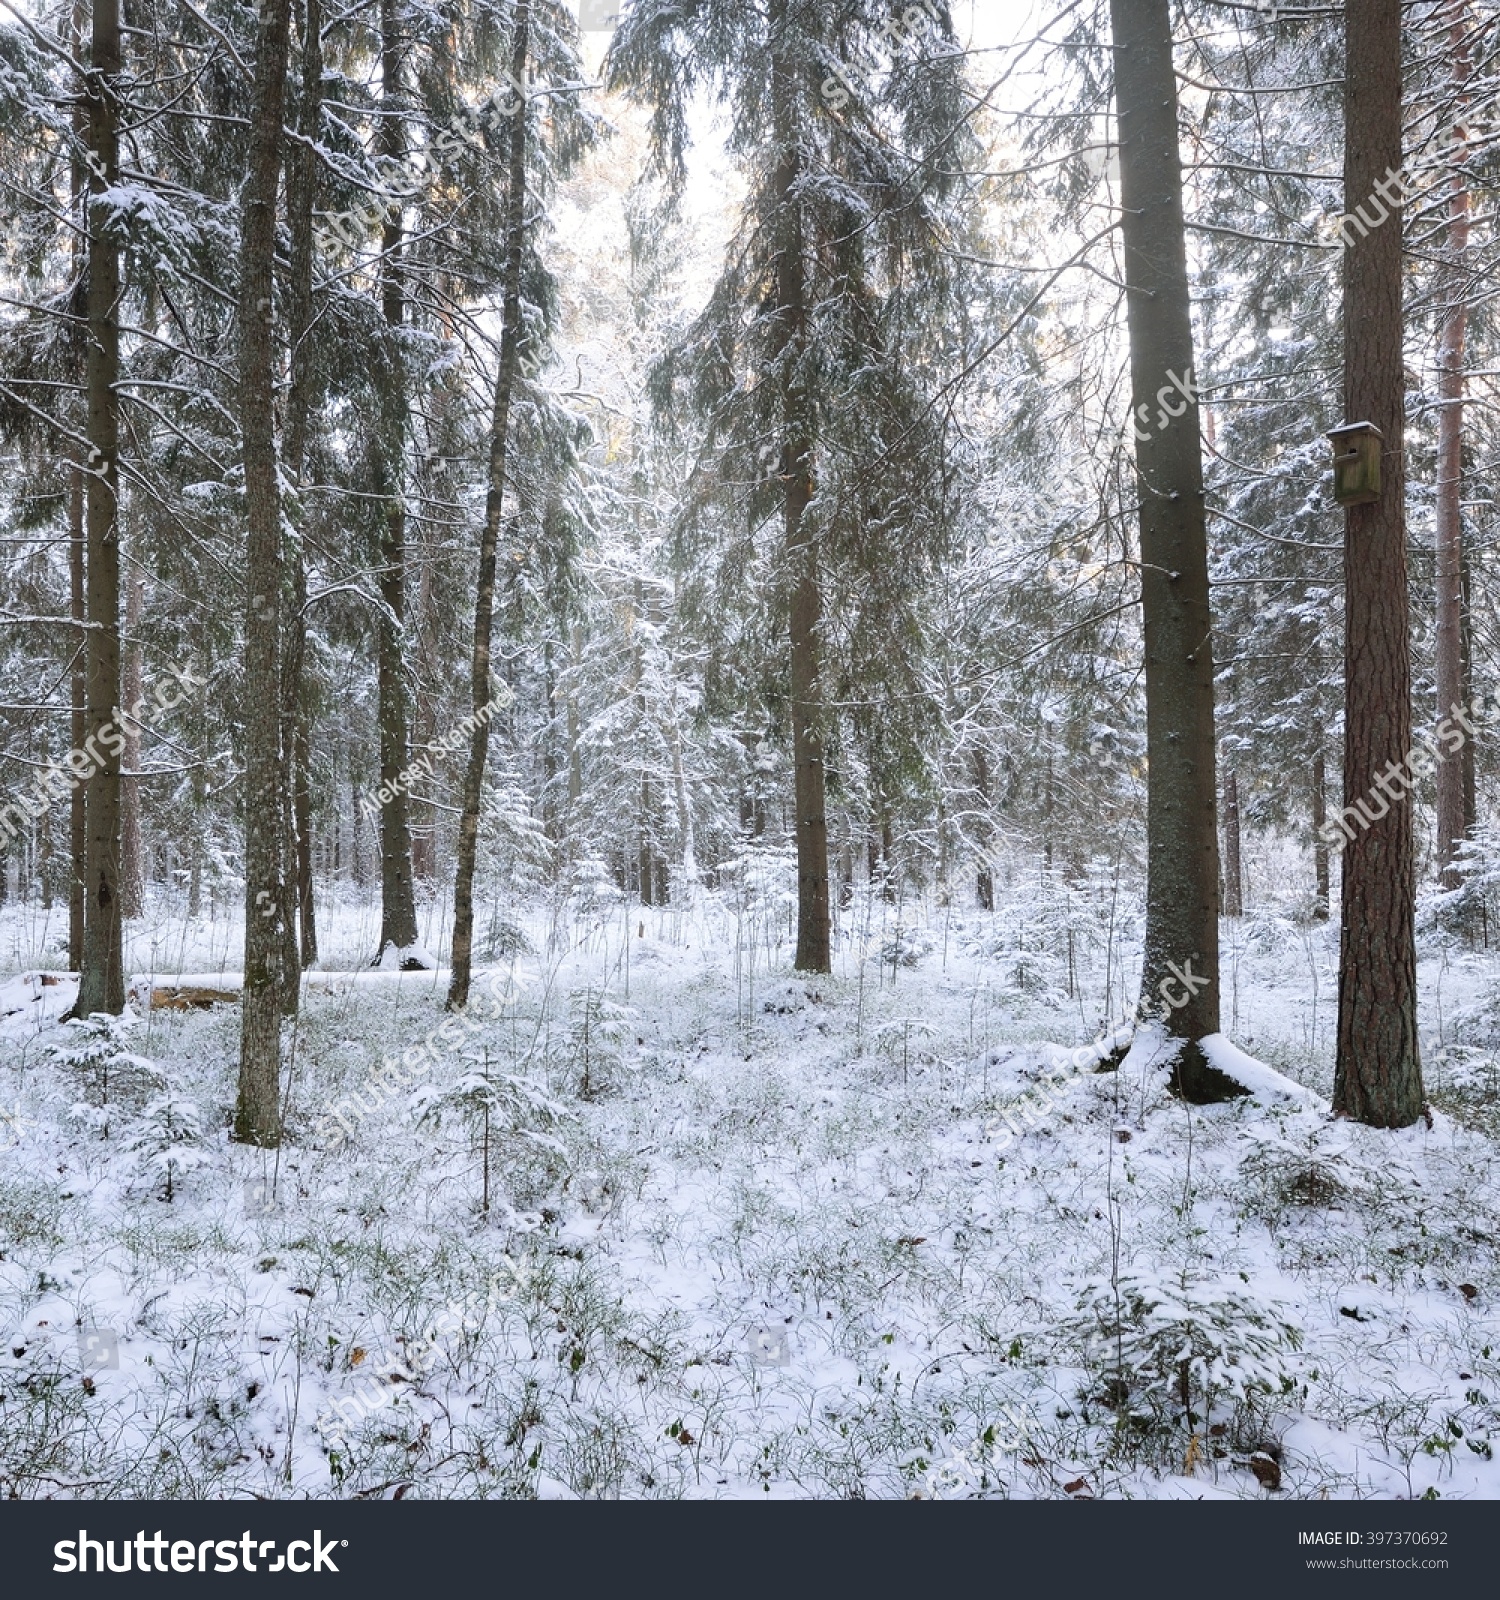 Winter wonderland in a snowy pine forest #397370692